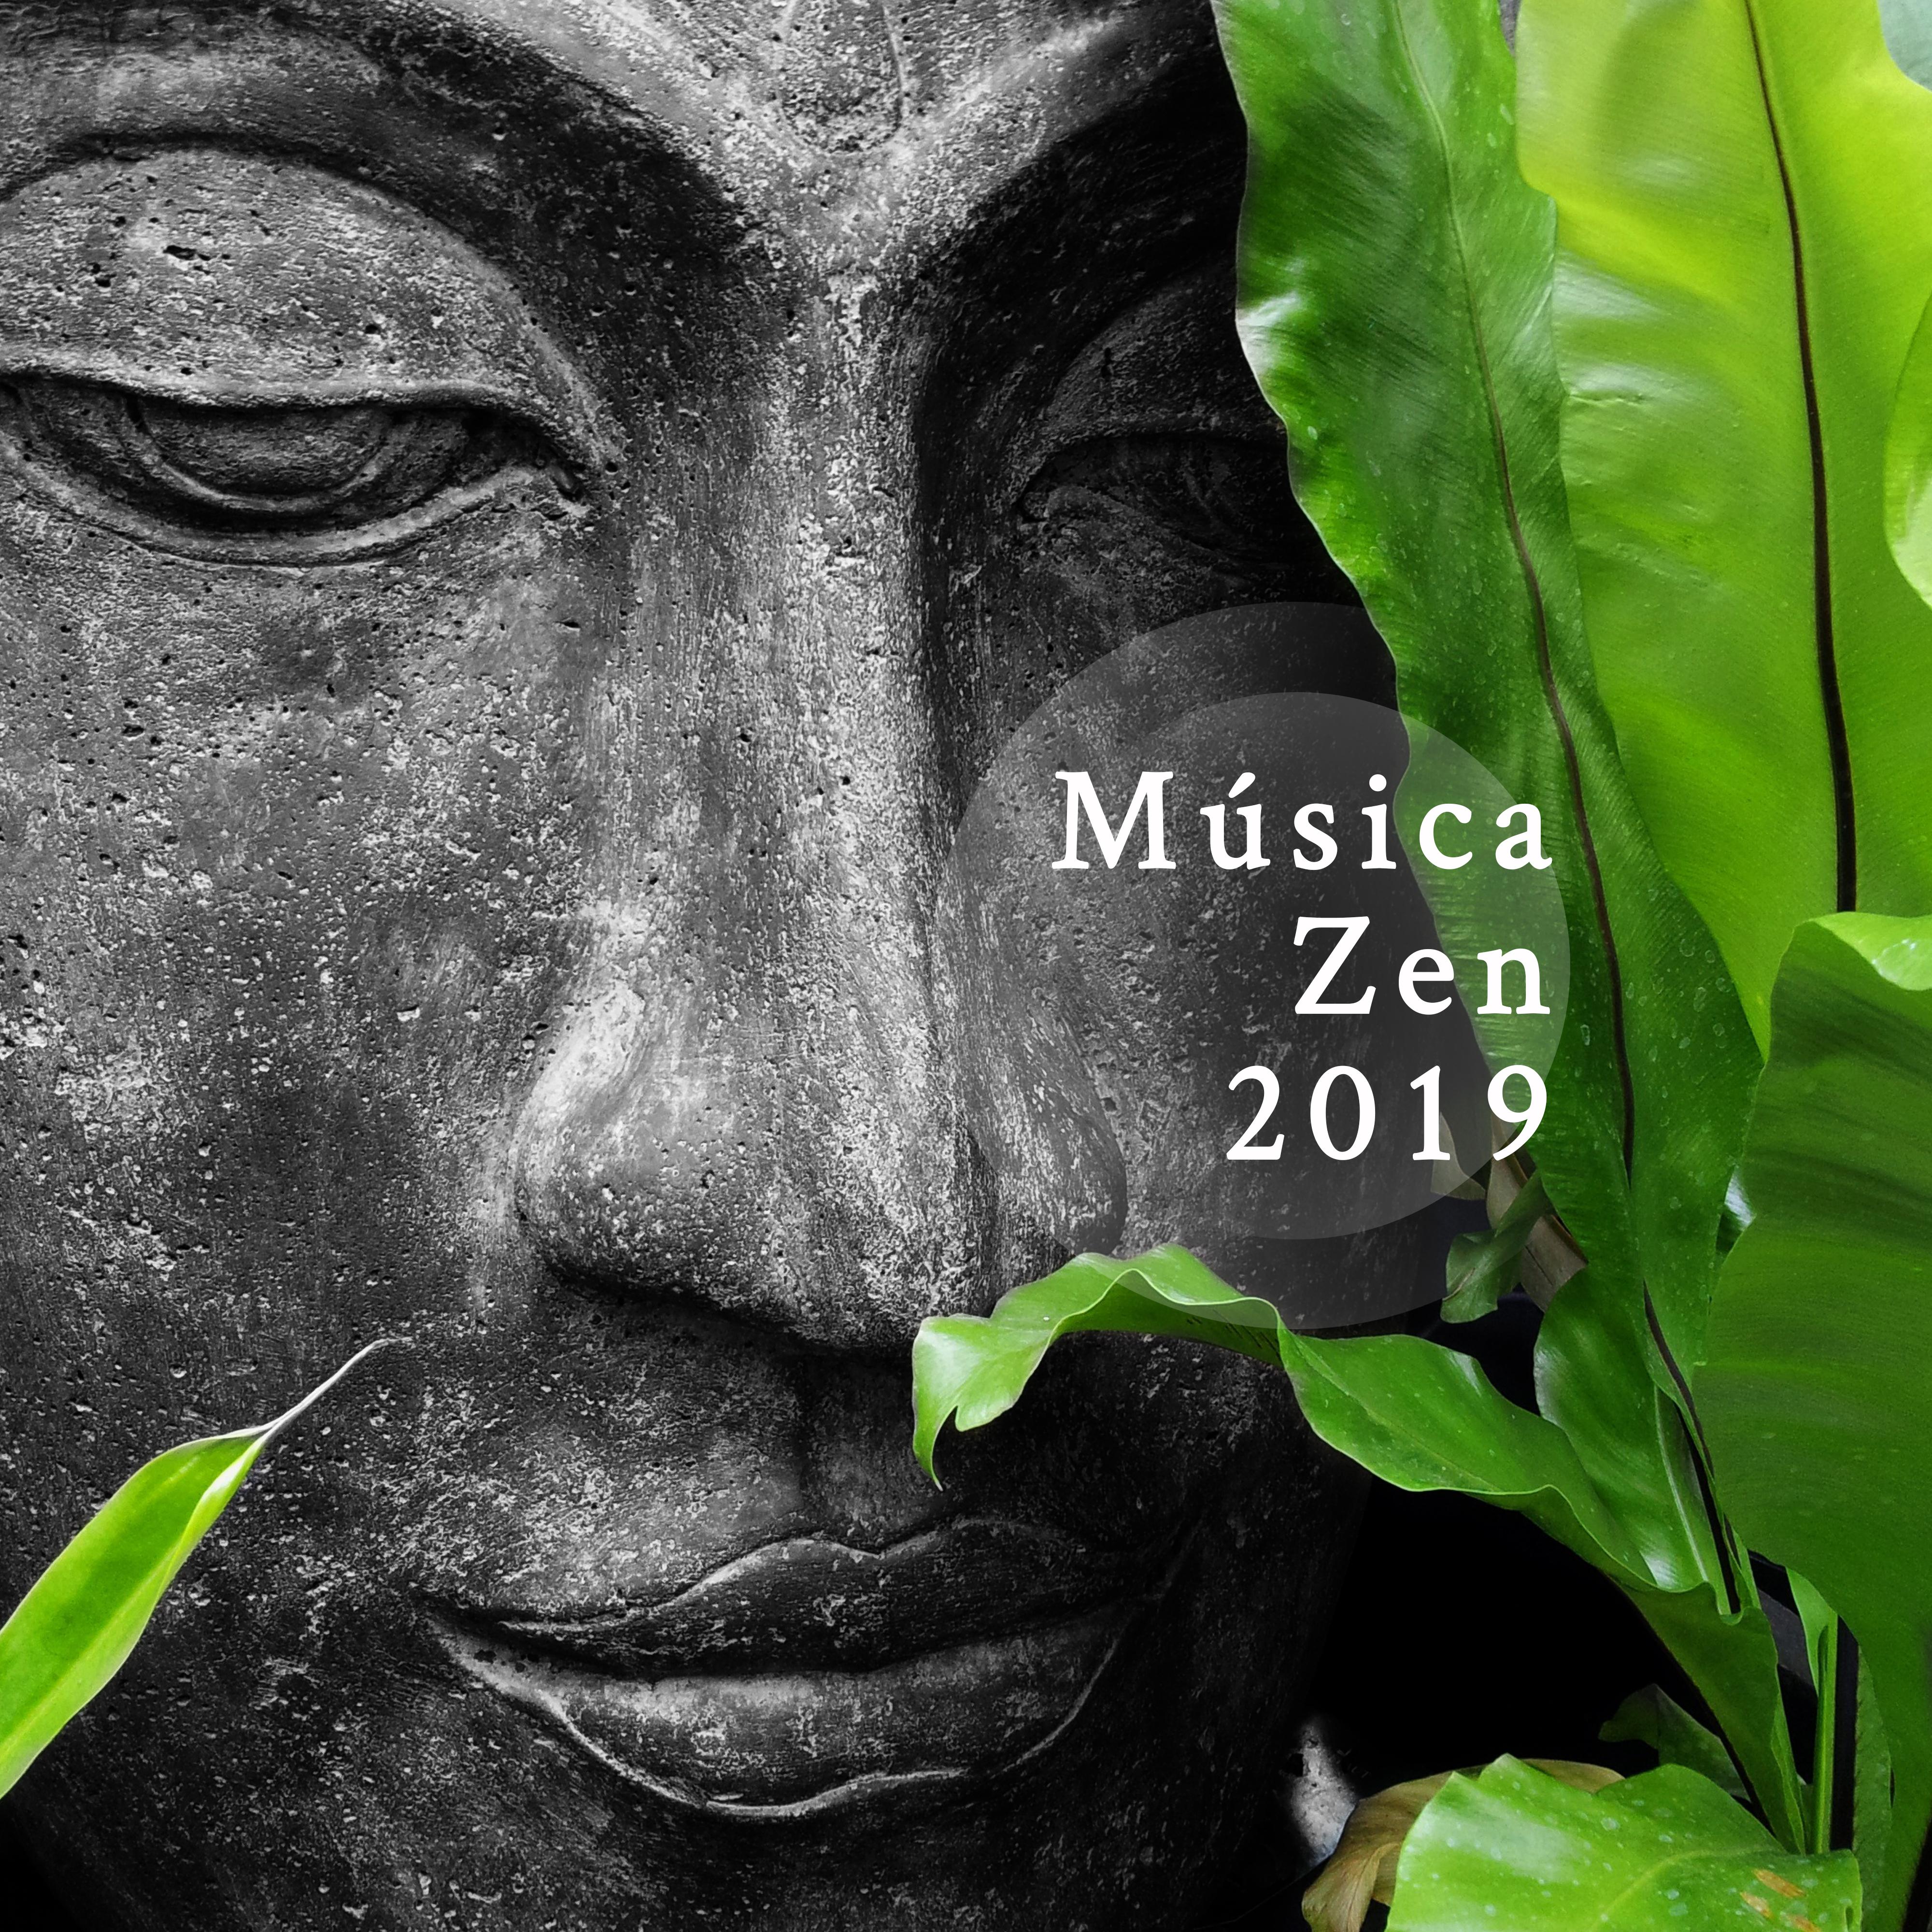 Música Zen 2019 - Canções Calmas para Meditação Profunda, Relaxamento, Spa, Harmonia Interna, Zona de Música de Meditação, Yoga Meditação